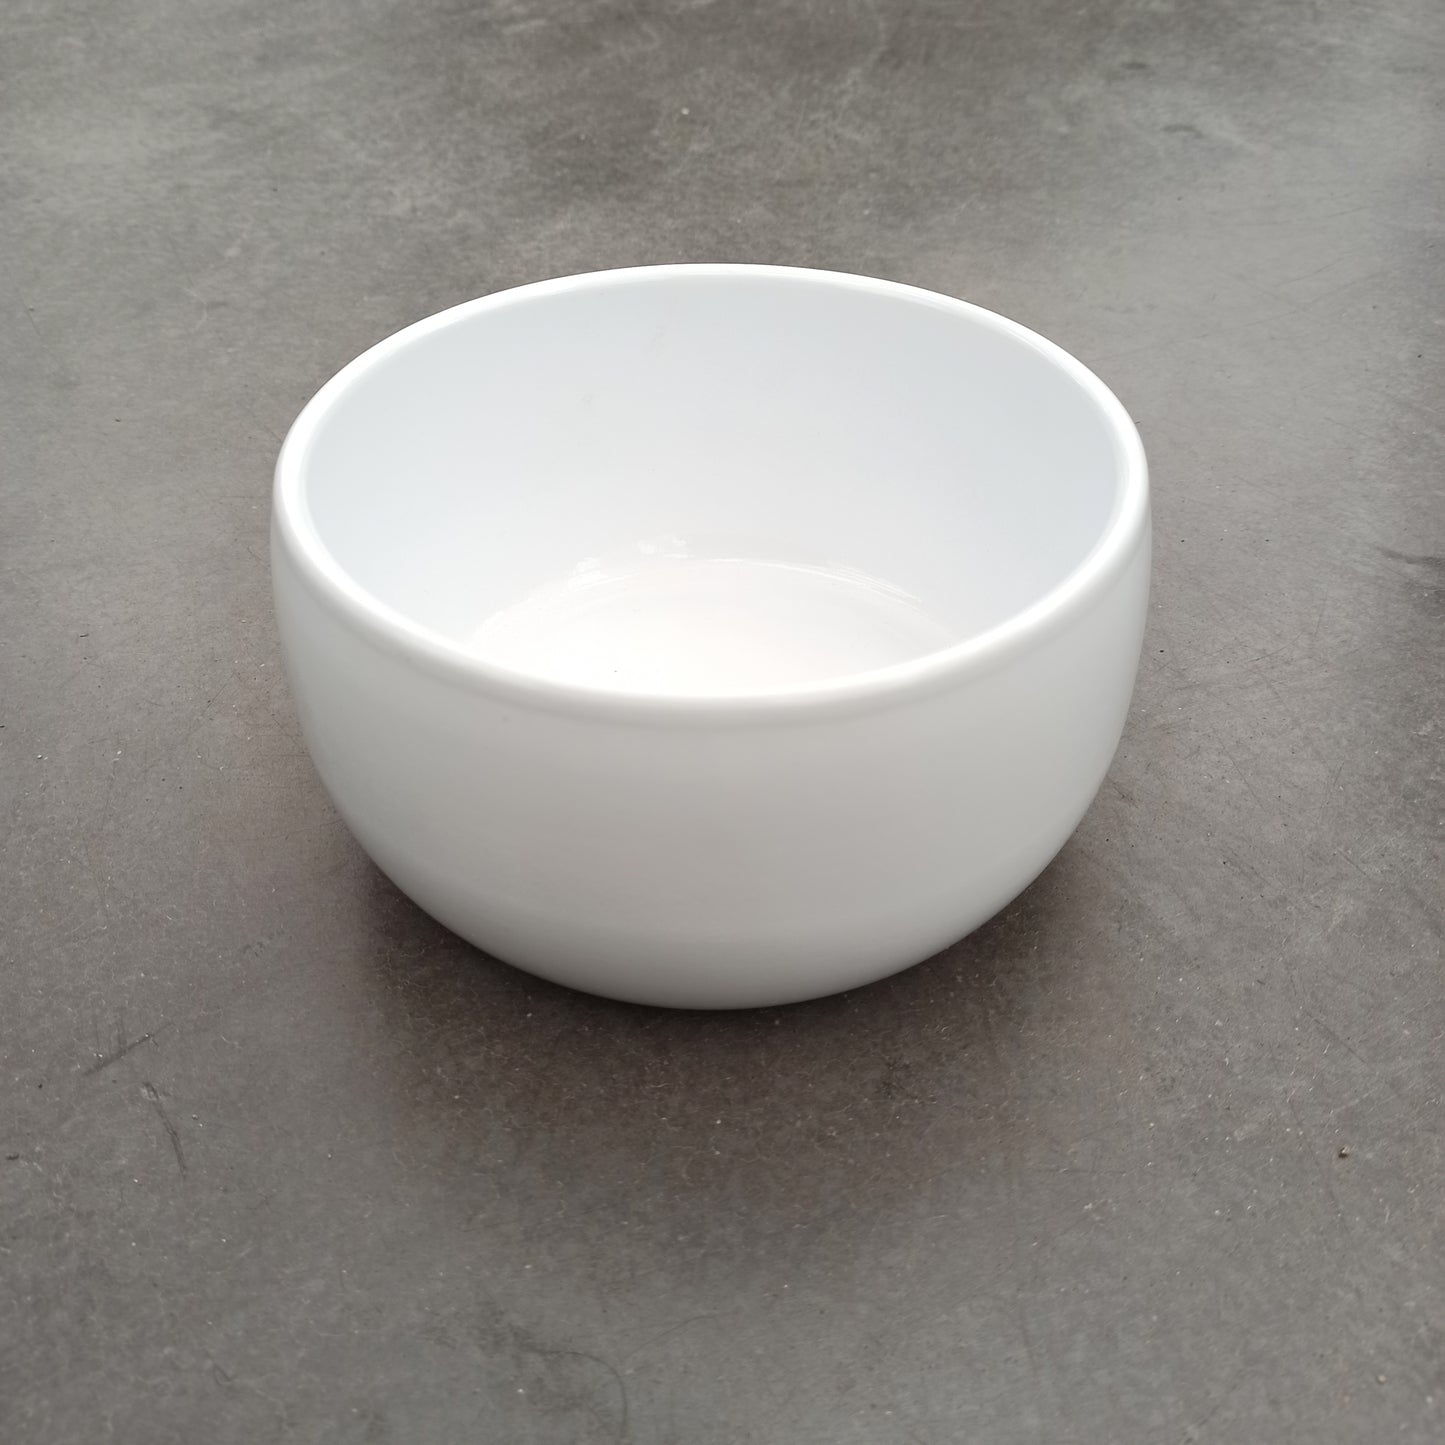 Ceramic truus blanca 17 x 8 cm